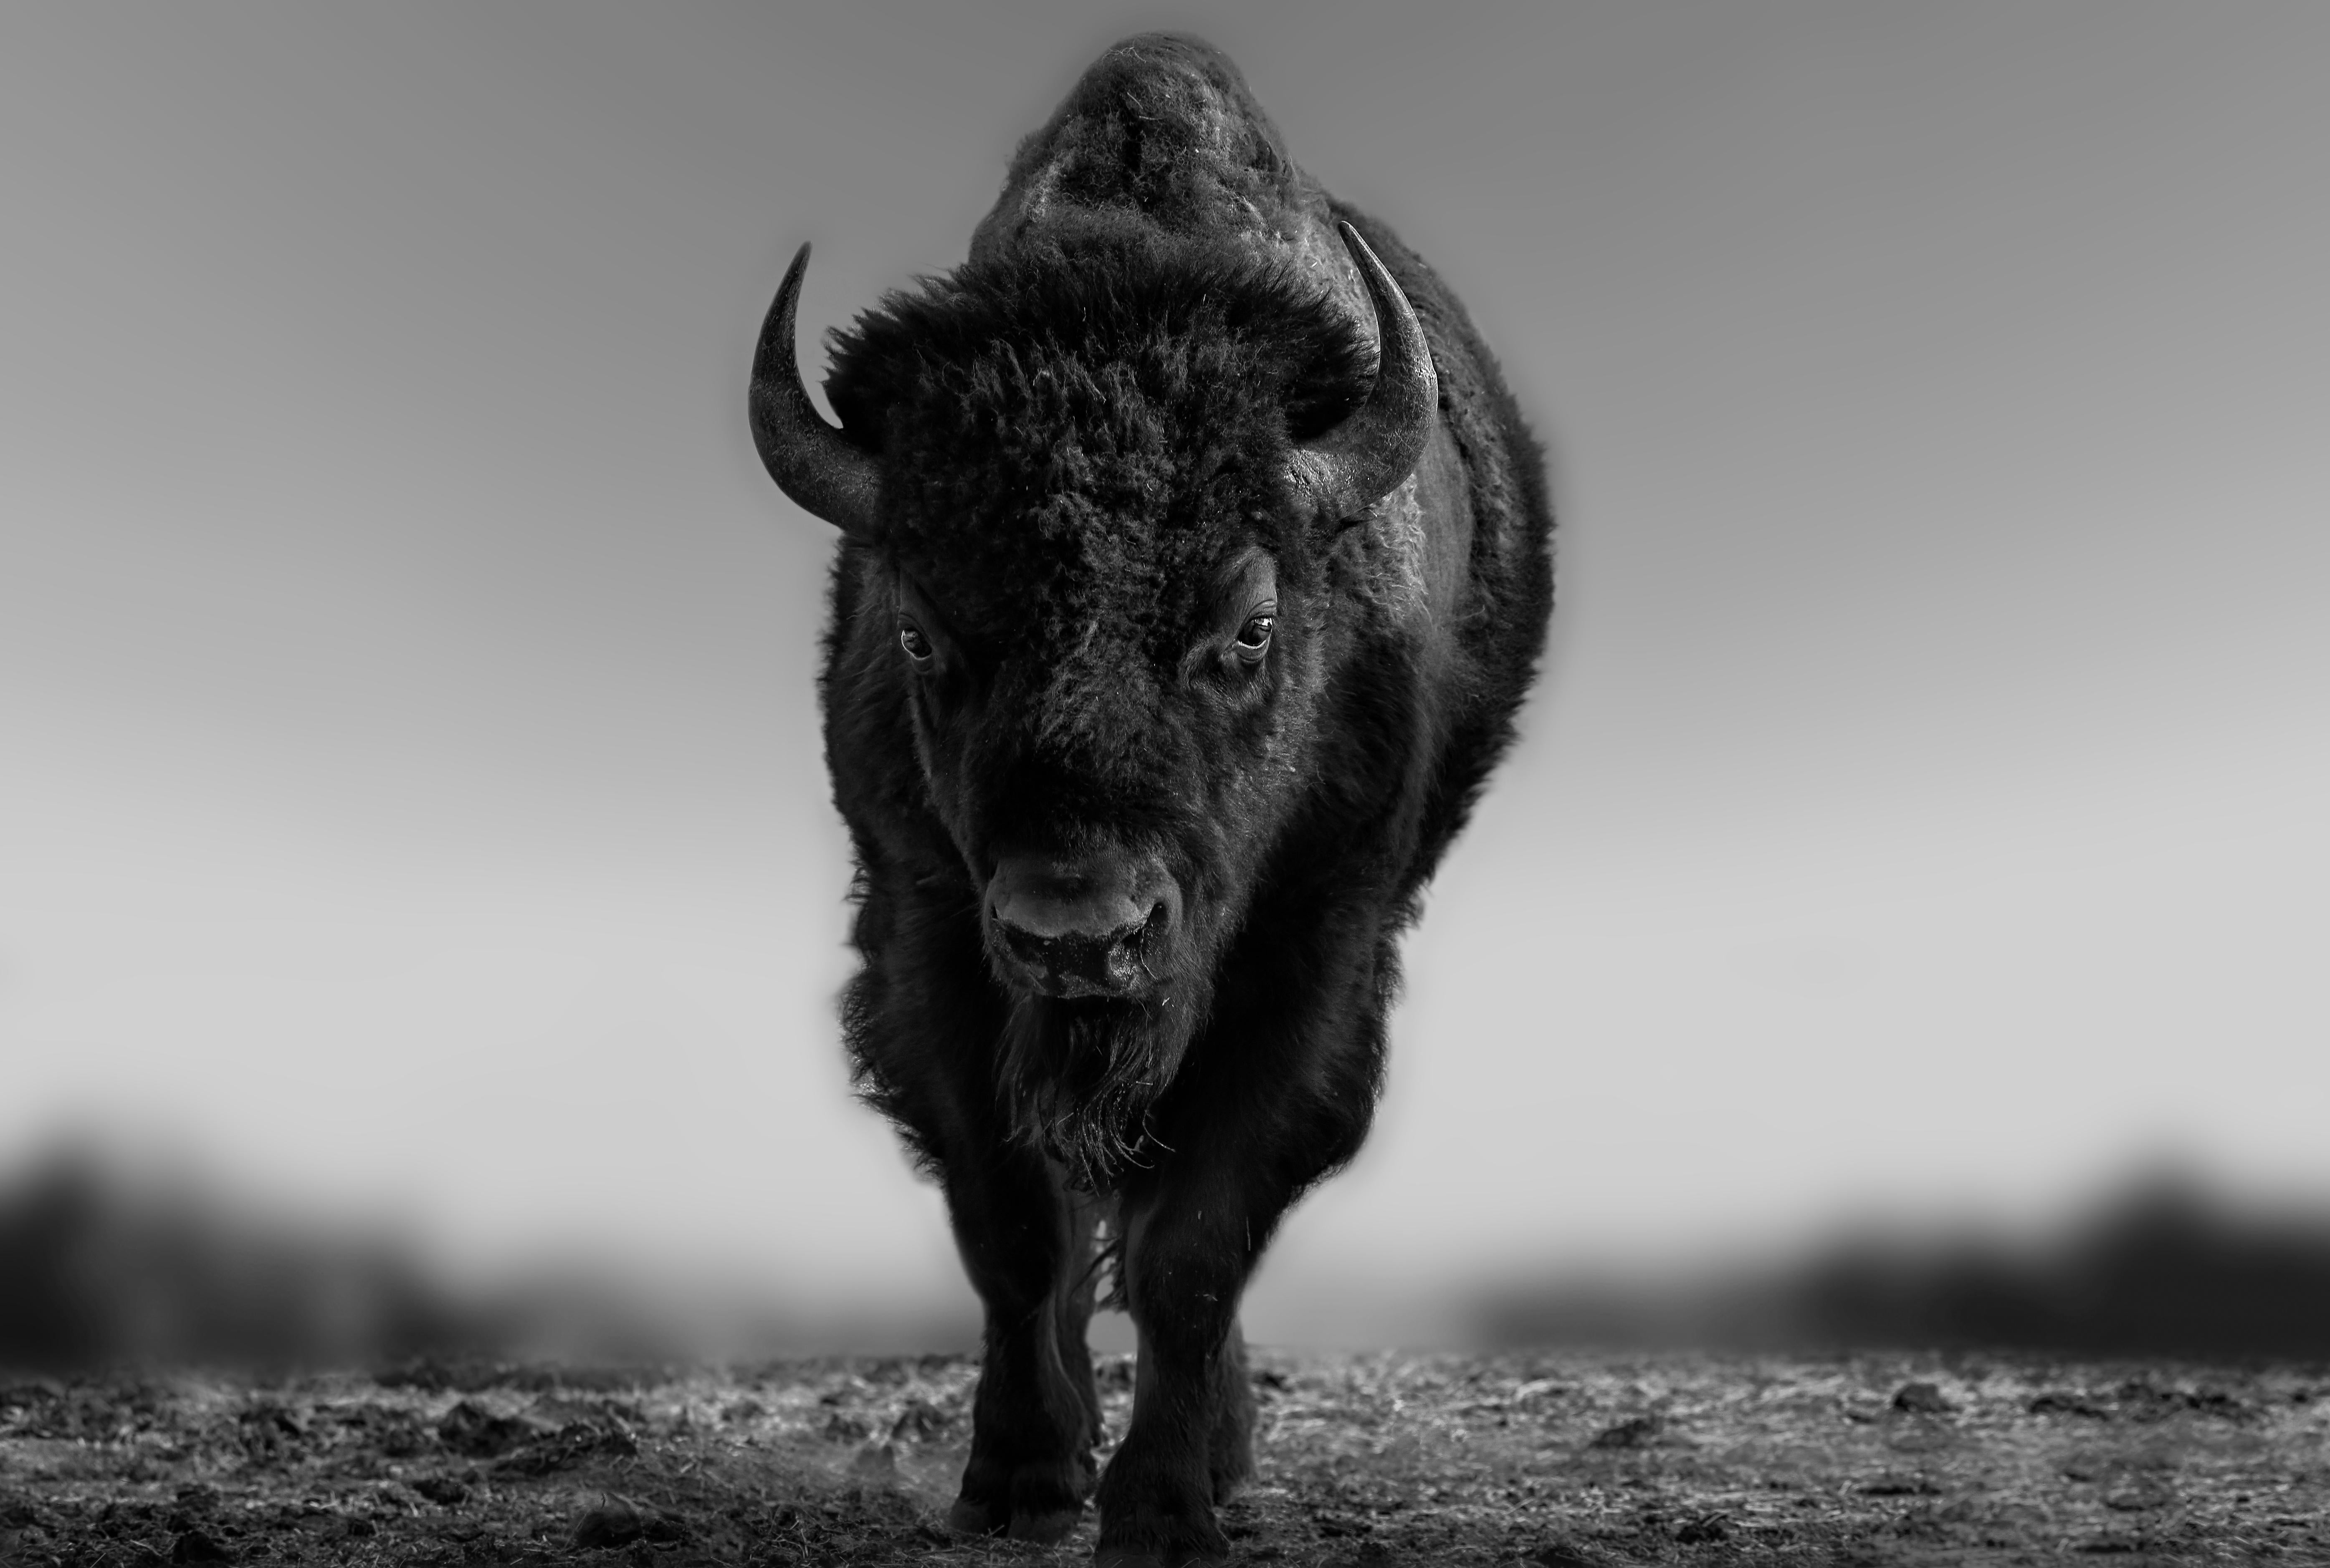 Shane Russeck Black and White Photograph – „The Beast“ 45x60 Schwarz-Schwarz-Weiß-Fotografie von Bison, Buffalo-Fotografie